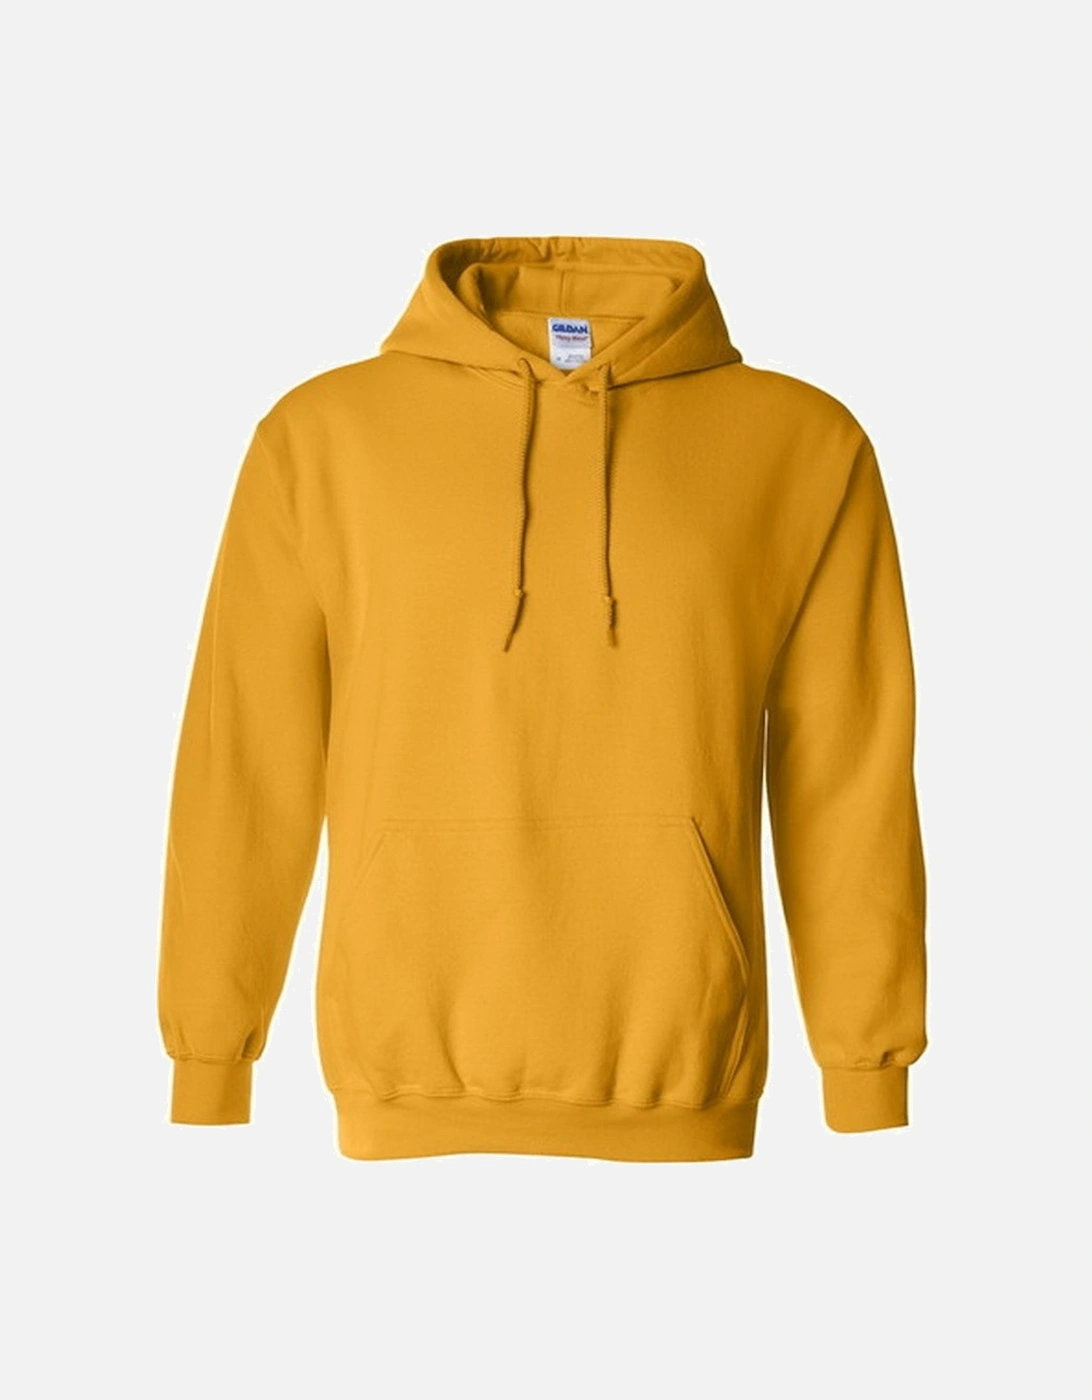 Heavy Blend Adult Unisex Hooded Sweatshirt / Hoodie, 6 of 5